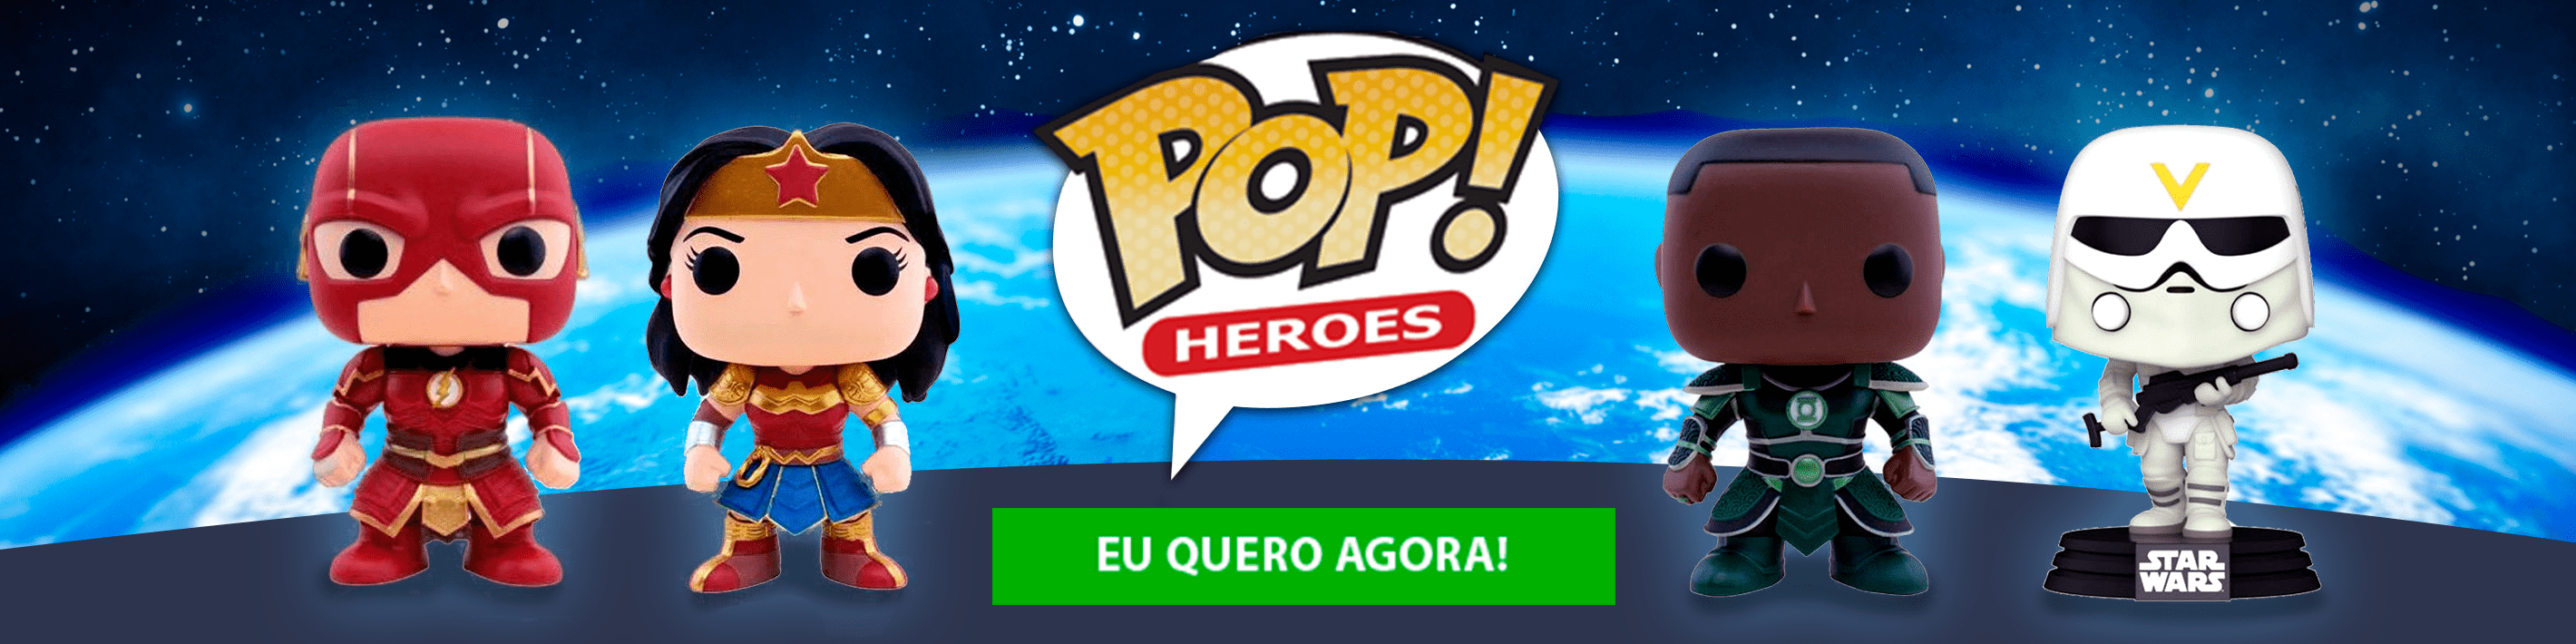 Banner 4 - Pop heroes